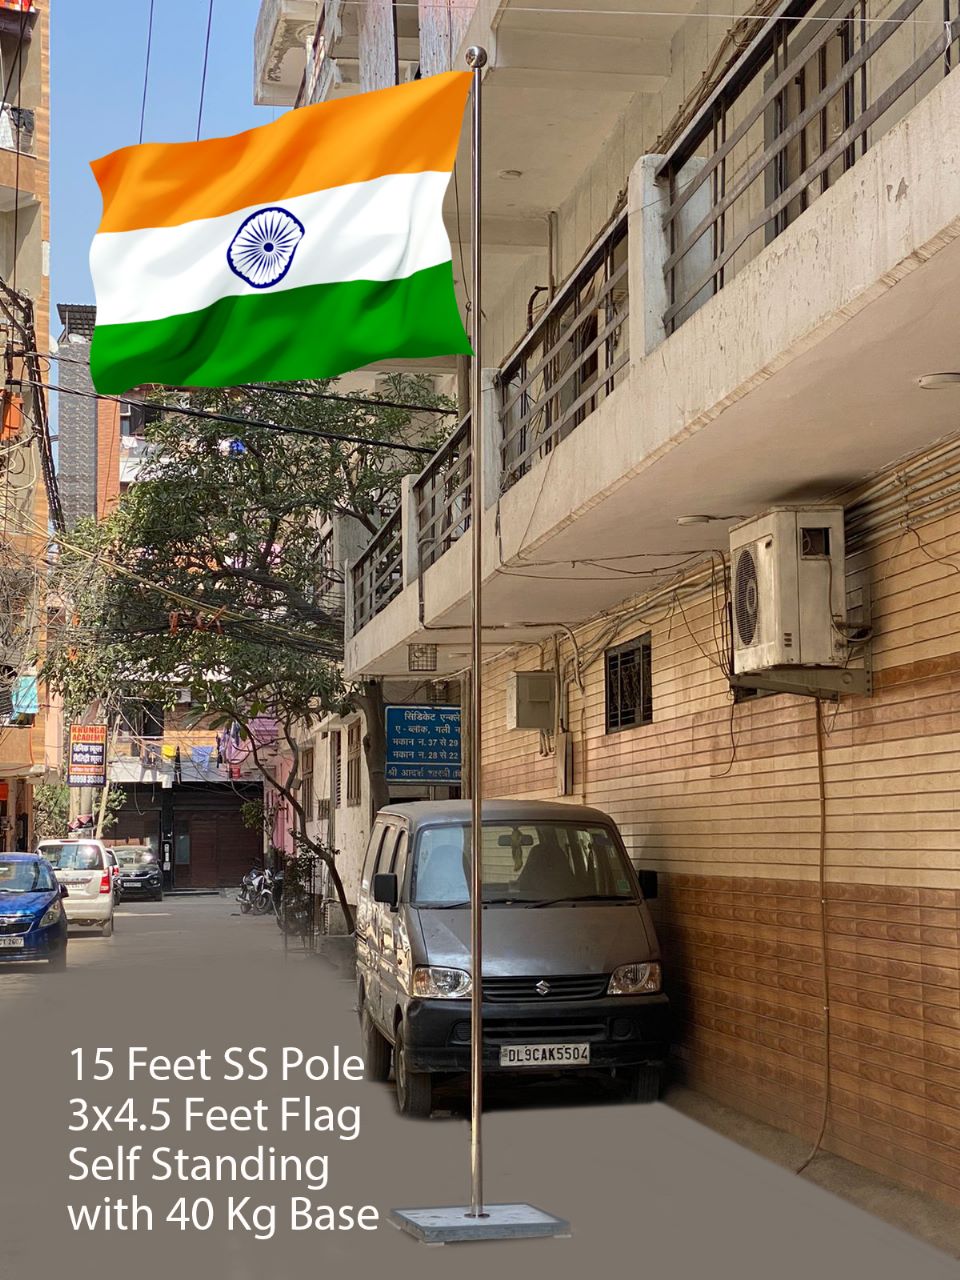 15 Feet SS Pole Flags